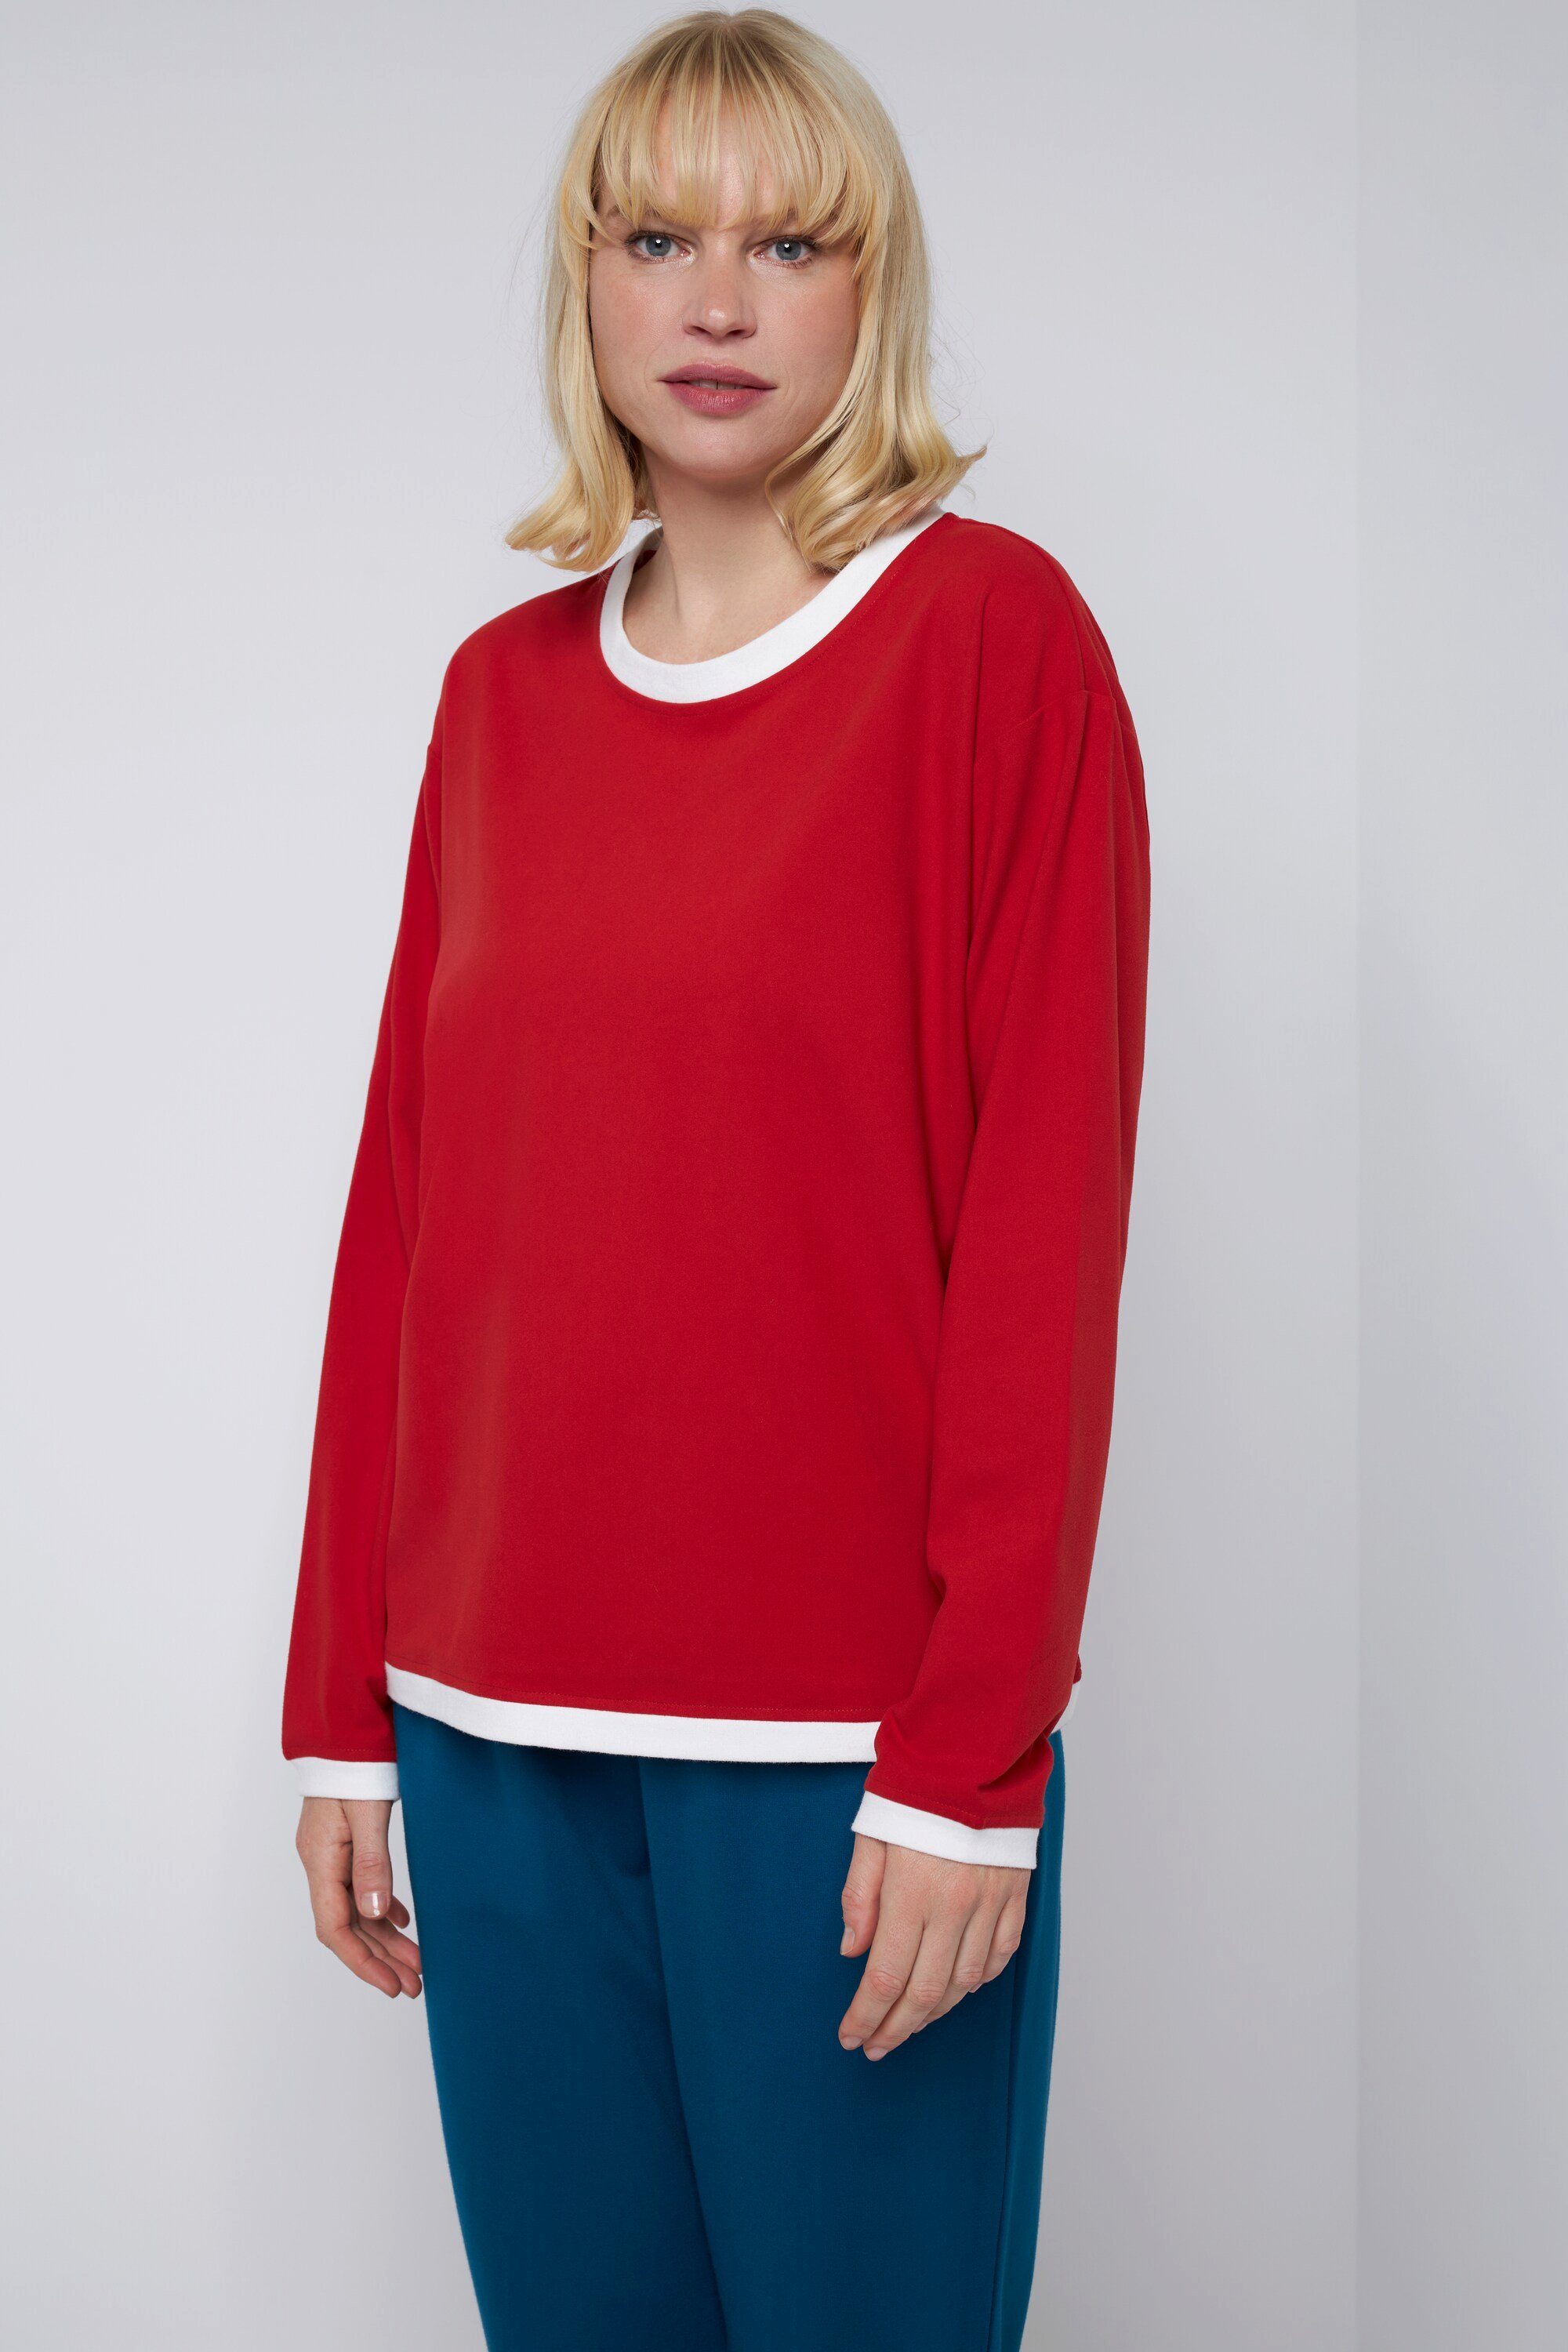 Farb-Kontraste Longshirt Rundhals T-Shirt karminrot Langarm Gina Laura